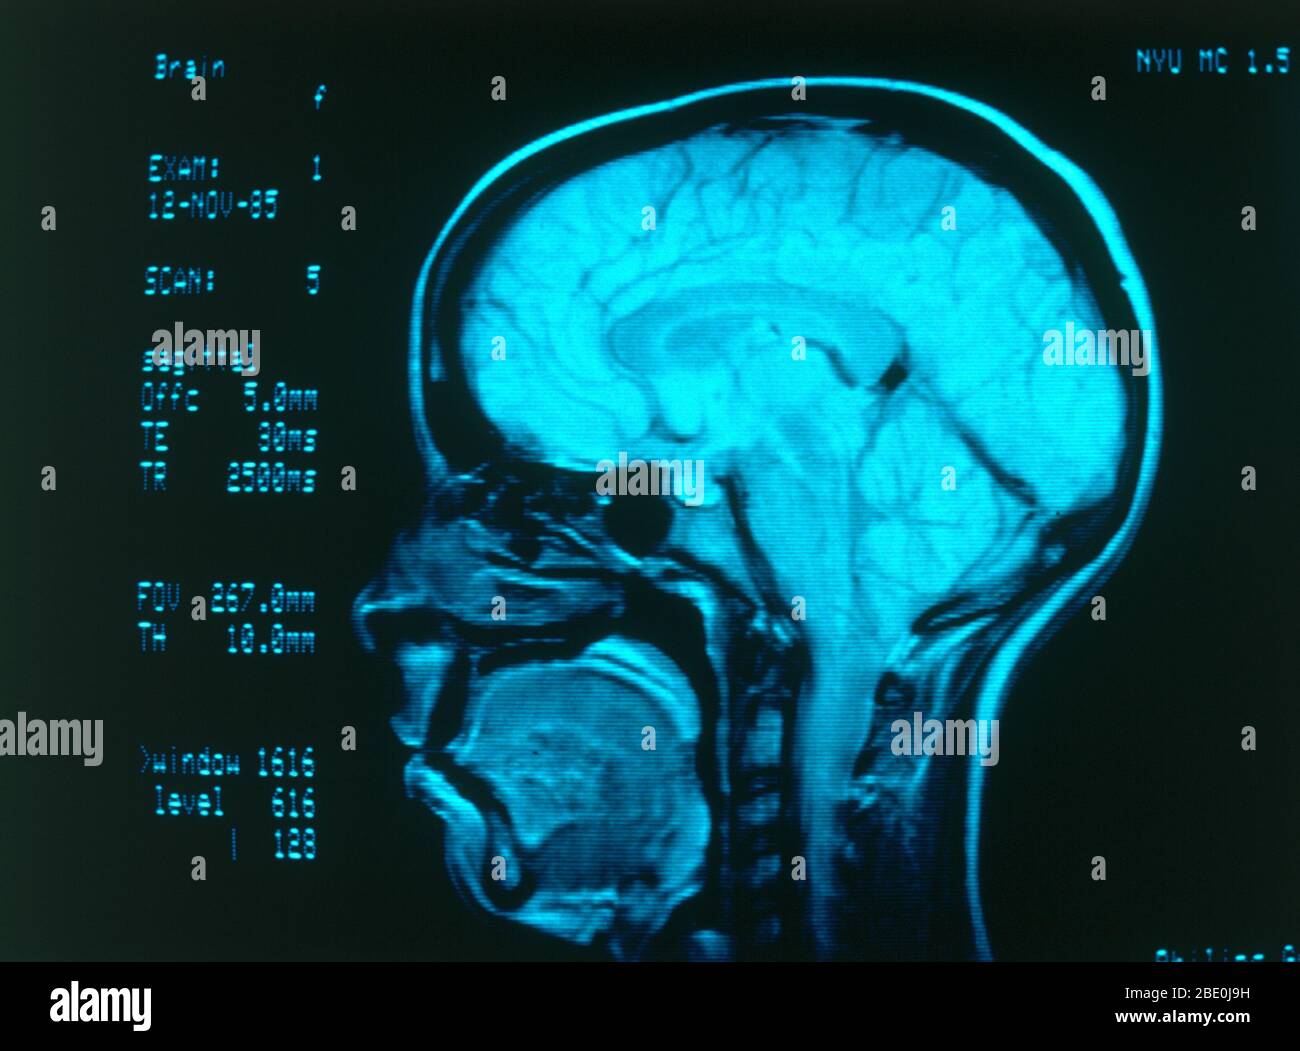 Angiographie en radiologie médicale montrant des vaisseaux sanguins normaux dans le cerveau. Banque D'Images